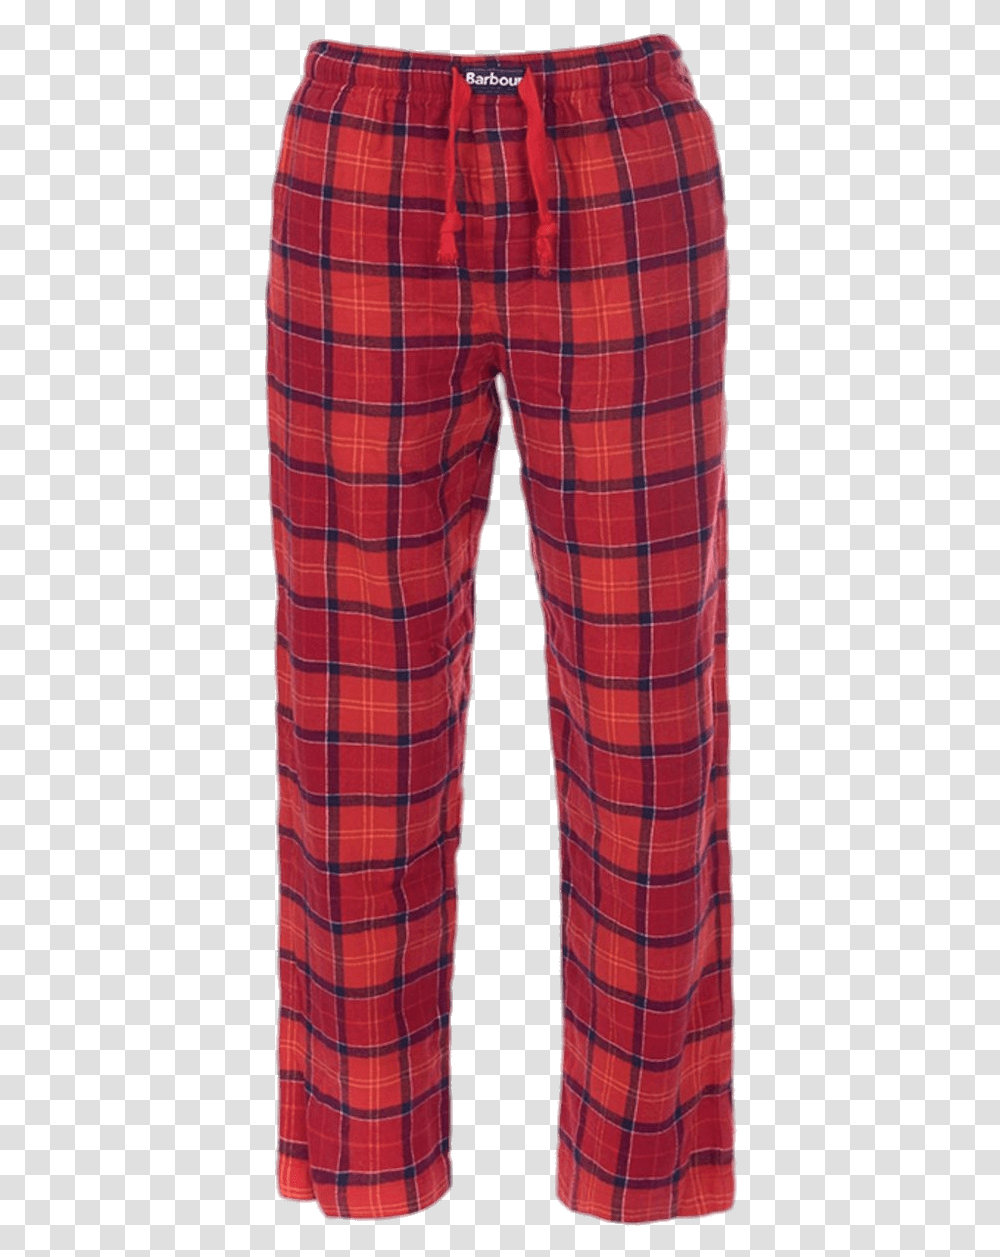 Barbour Pyjama Bottoms Pajama Pants Background, Apparel, Home Decor, Tartan Transparent Png